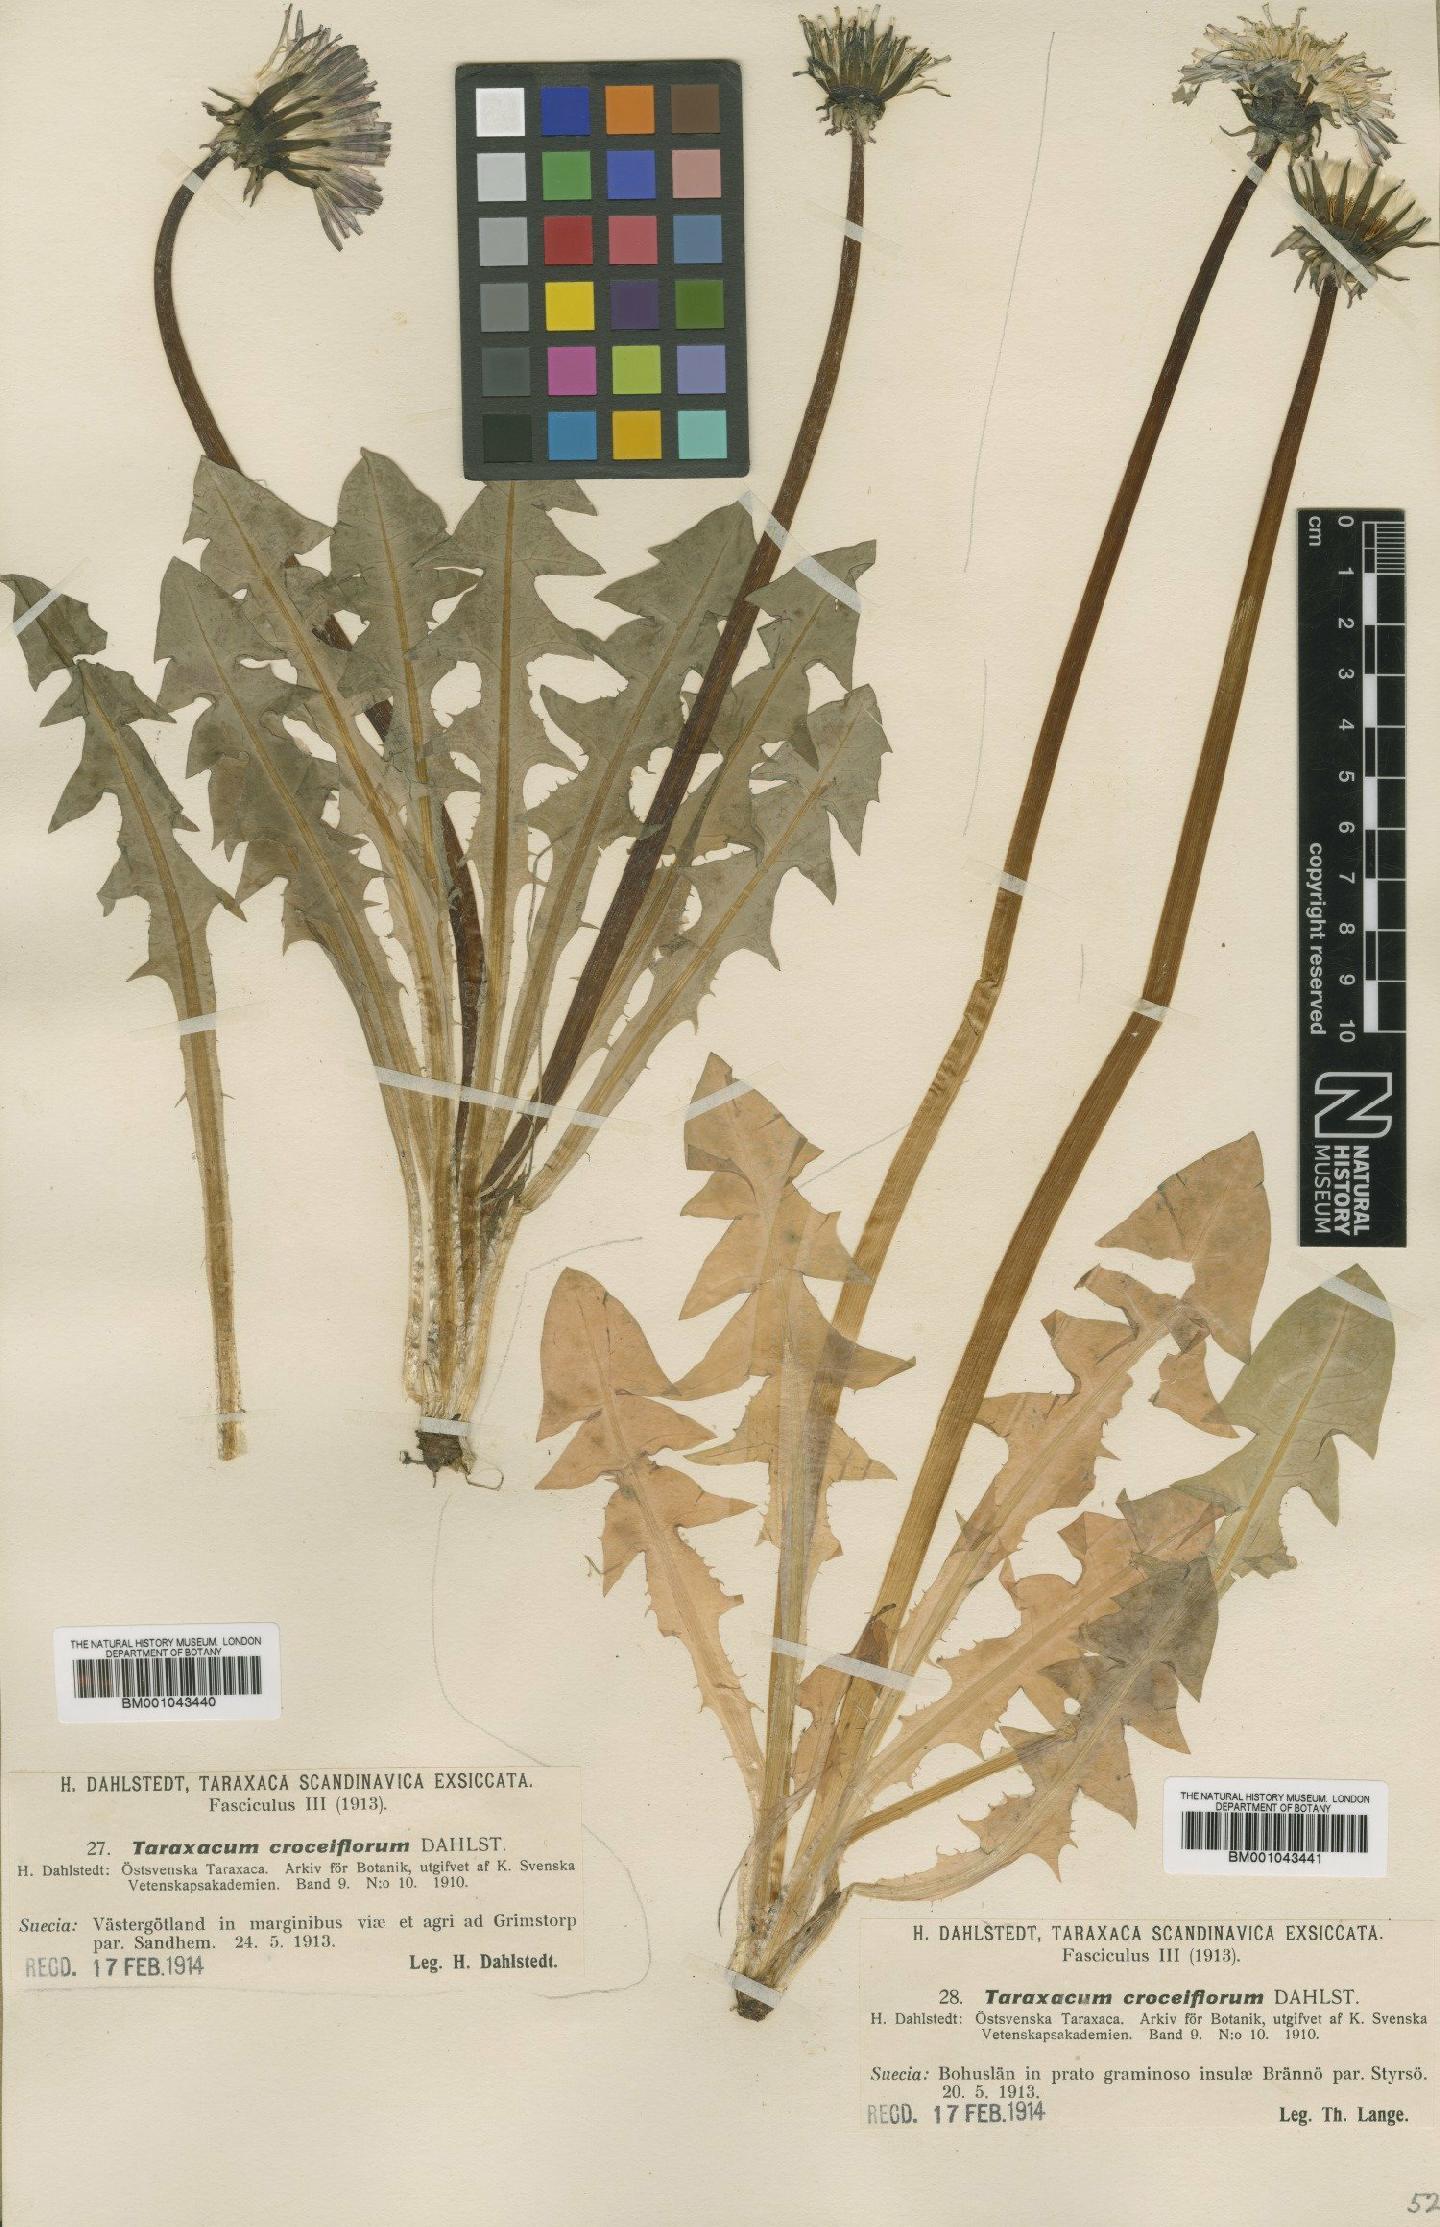 To NHMUK collection (Taraxacum croceiflorum Dahlst; Type; NHMUK:ecatalogue:1998143)